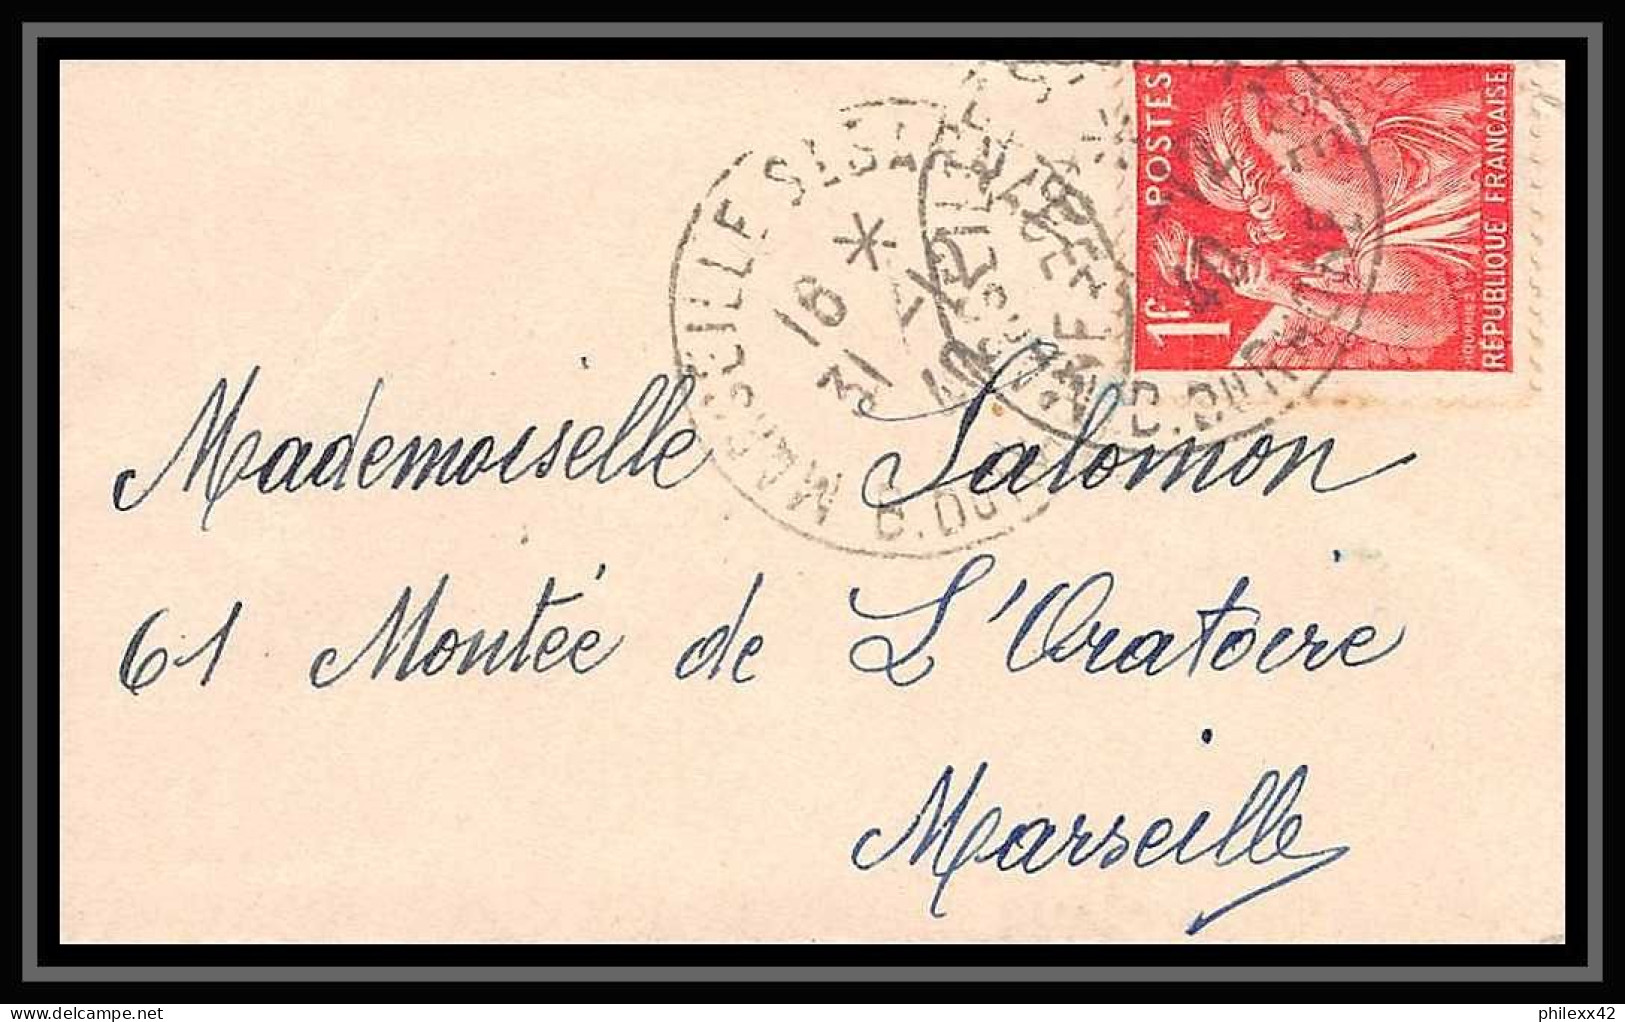 110874 lot de 8 Lettres Bouches du rhone Marseille saint barnabé 